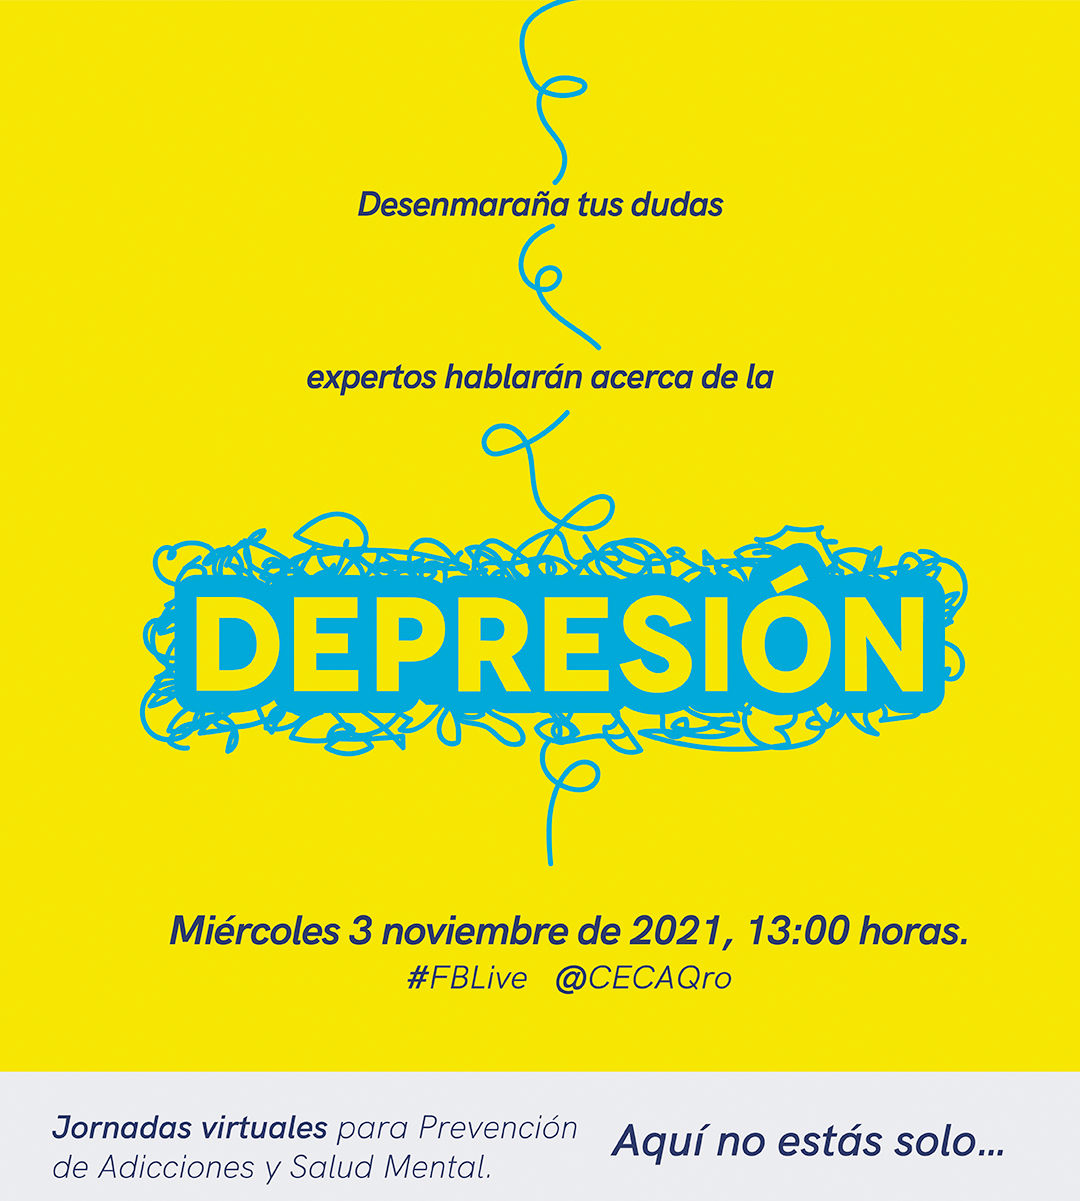 Seseq Invita A Jornadas Virtuales En Prevención De Adicciones Y Salud Mental Ceca QuerÉtaro 2345